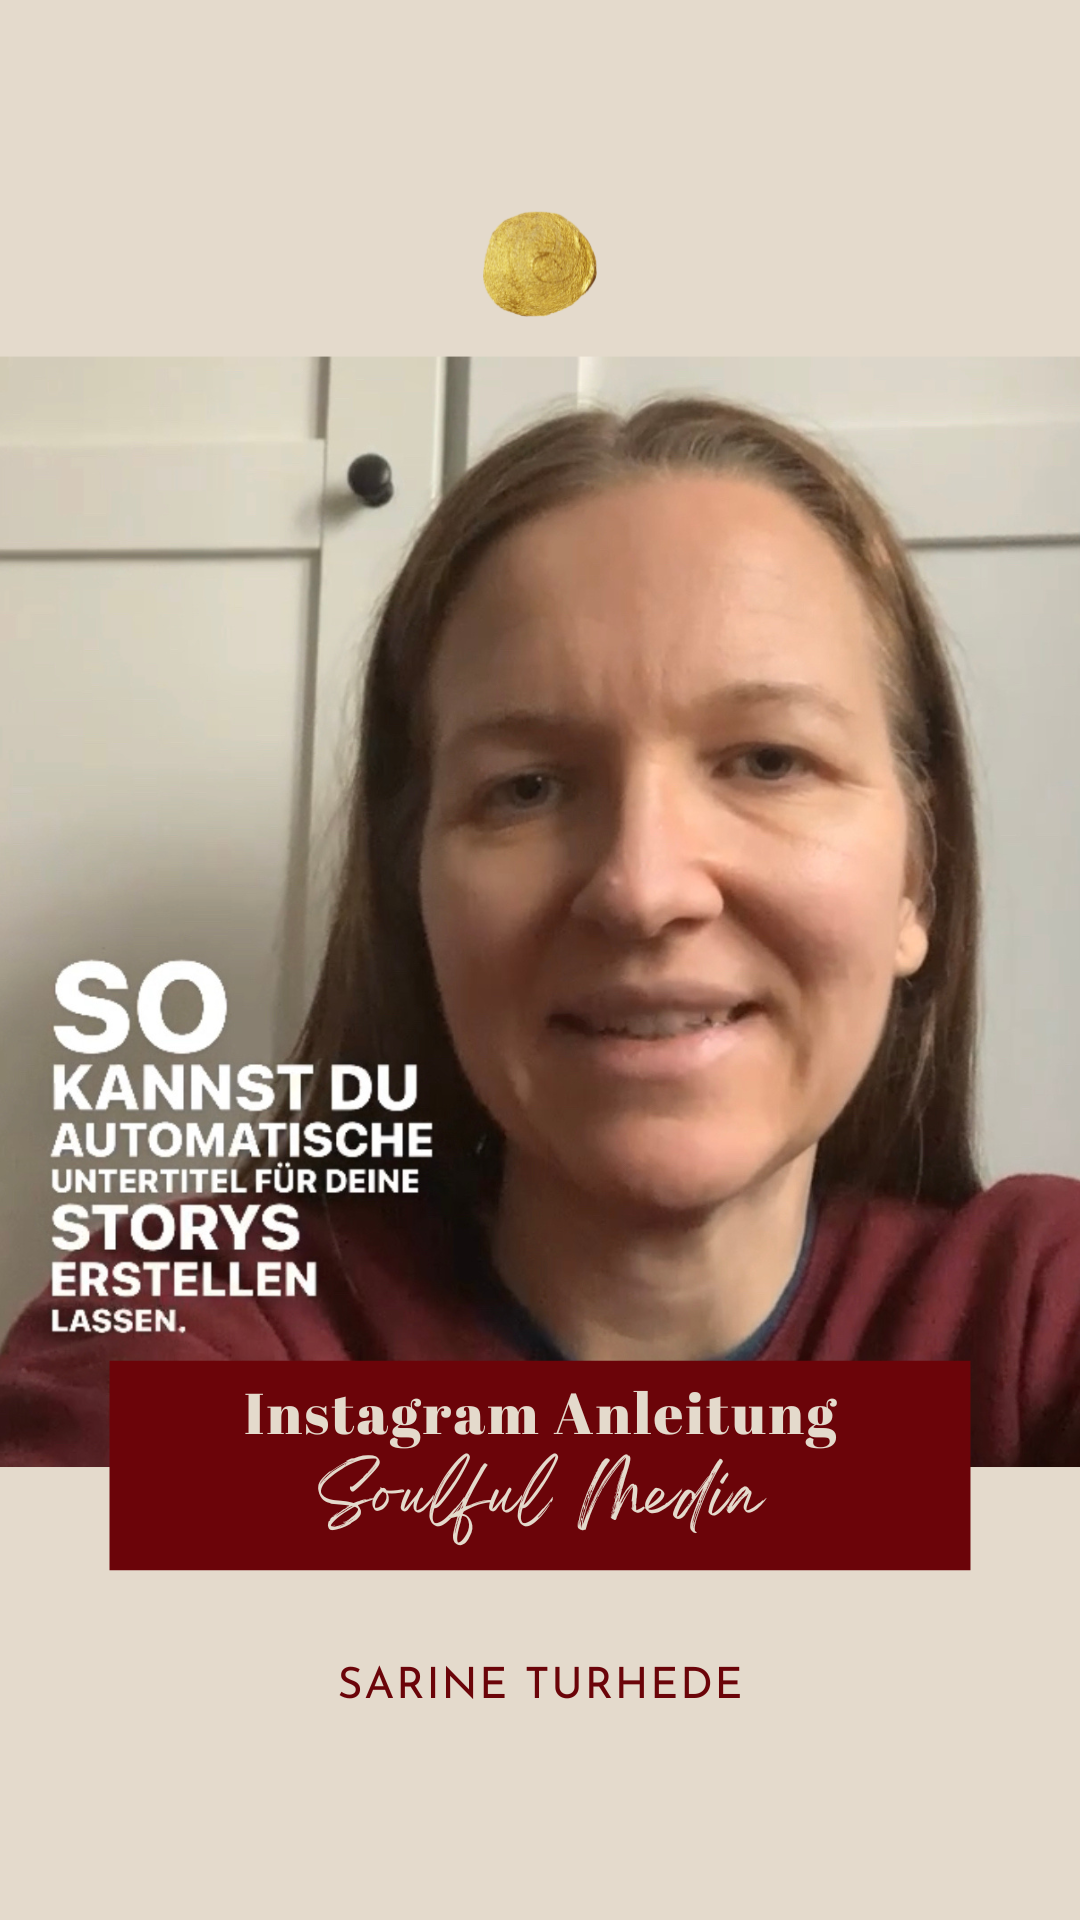 Kostenfrei Automatische Untertitel Instagram Anleitung Sarine Turhede